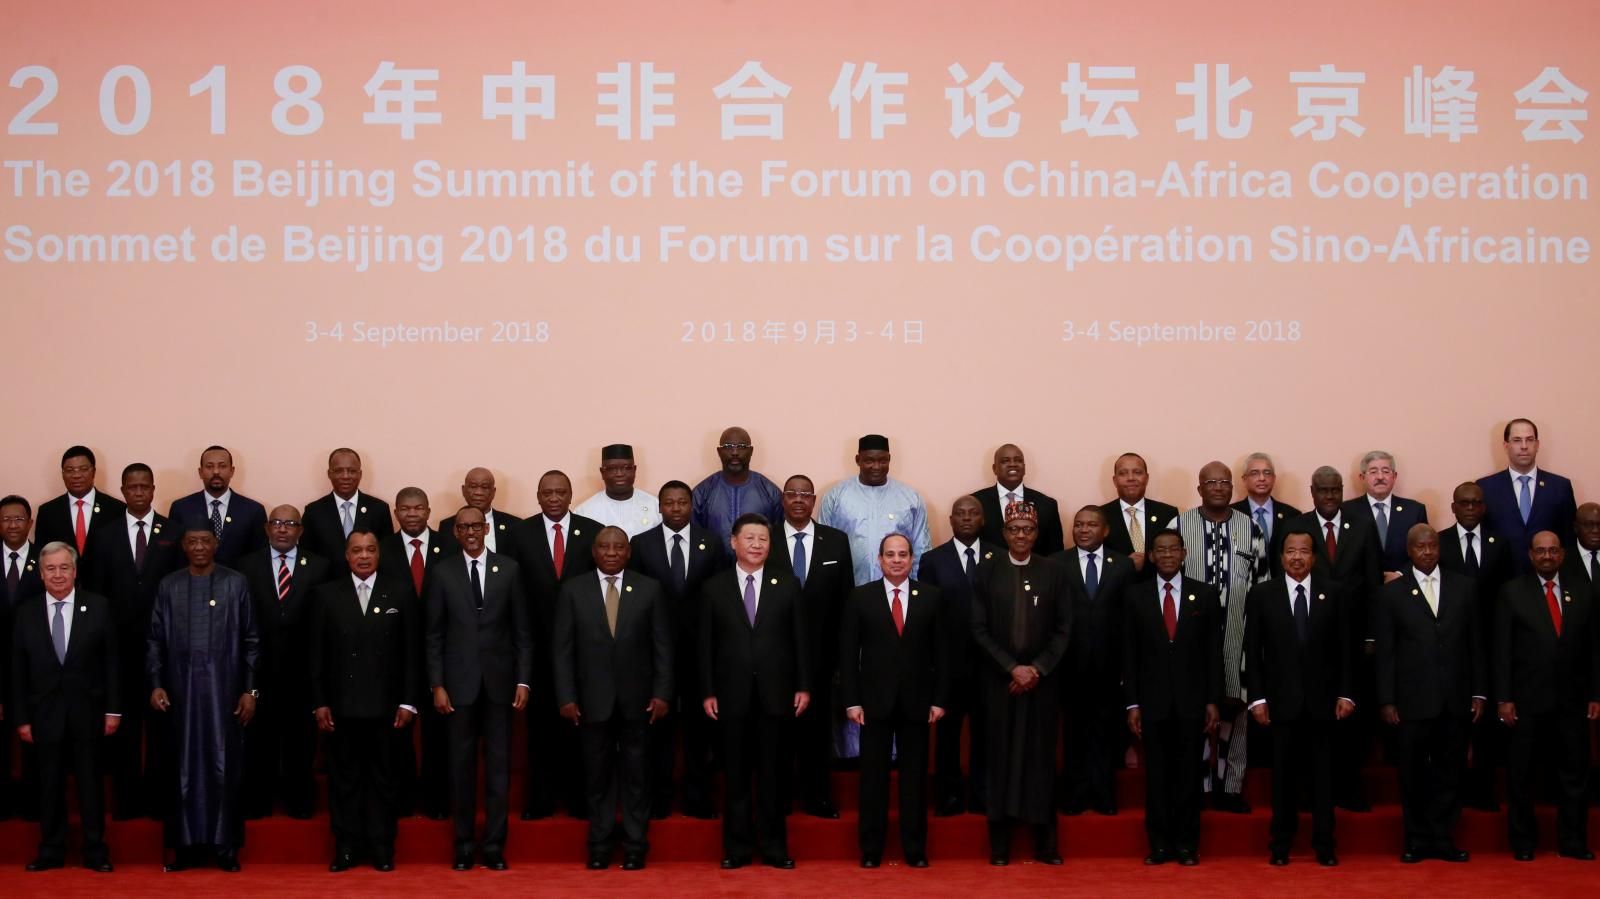 الرئيس الصيني والرئيس المصري عبدالفتاح السيسي في صورة جماعية مع قادة ورؤساء ألإريقيا المشاركين في القمة الصينية الأفريقية في بكين 2018.